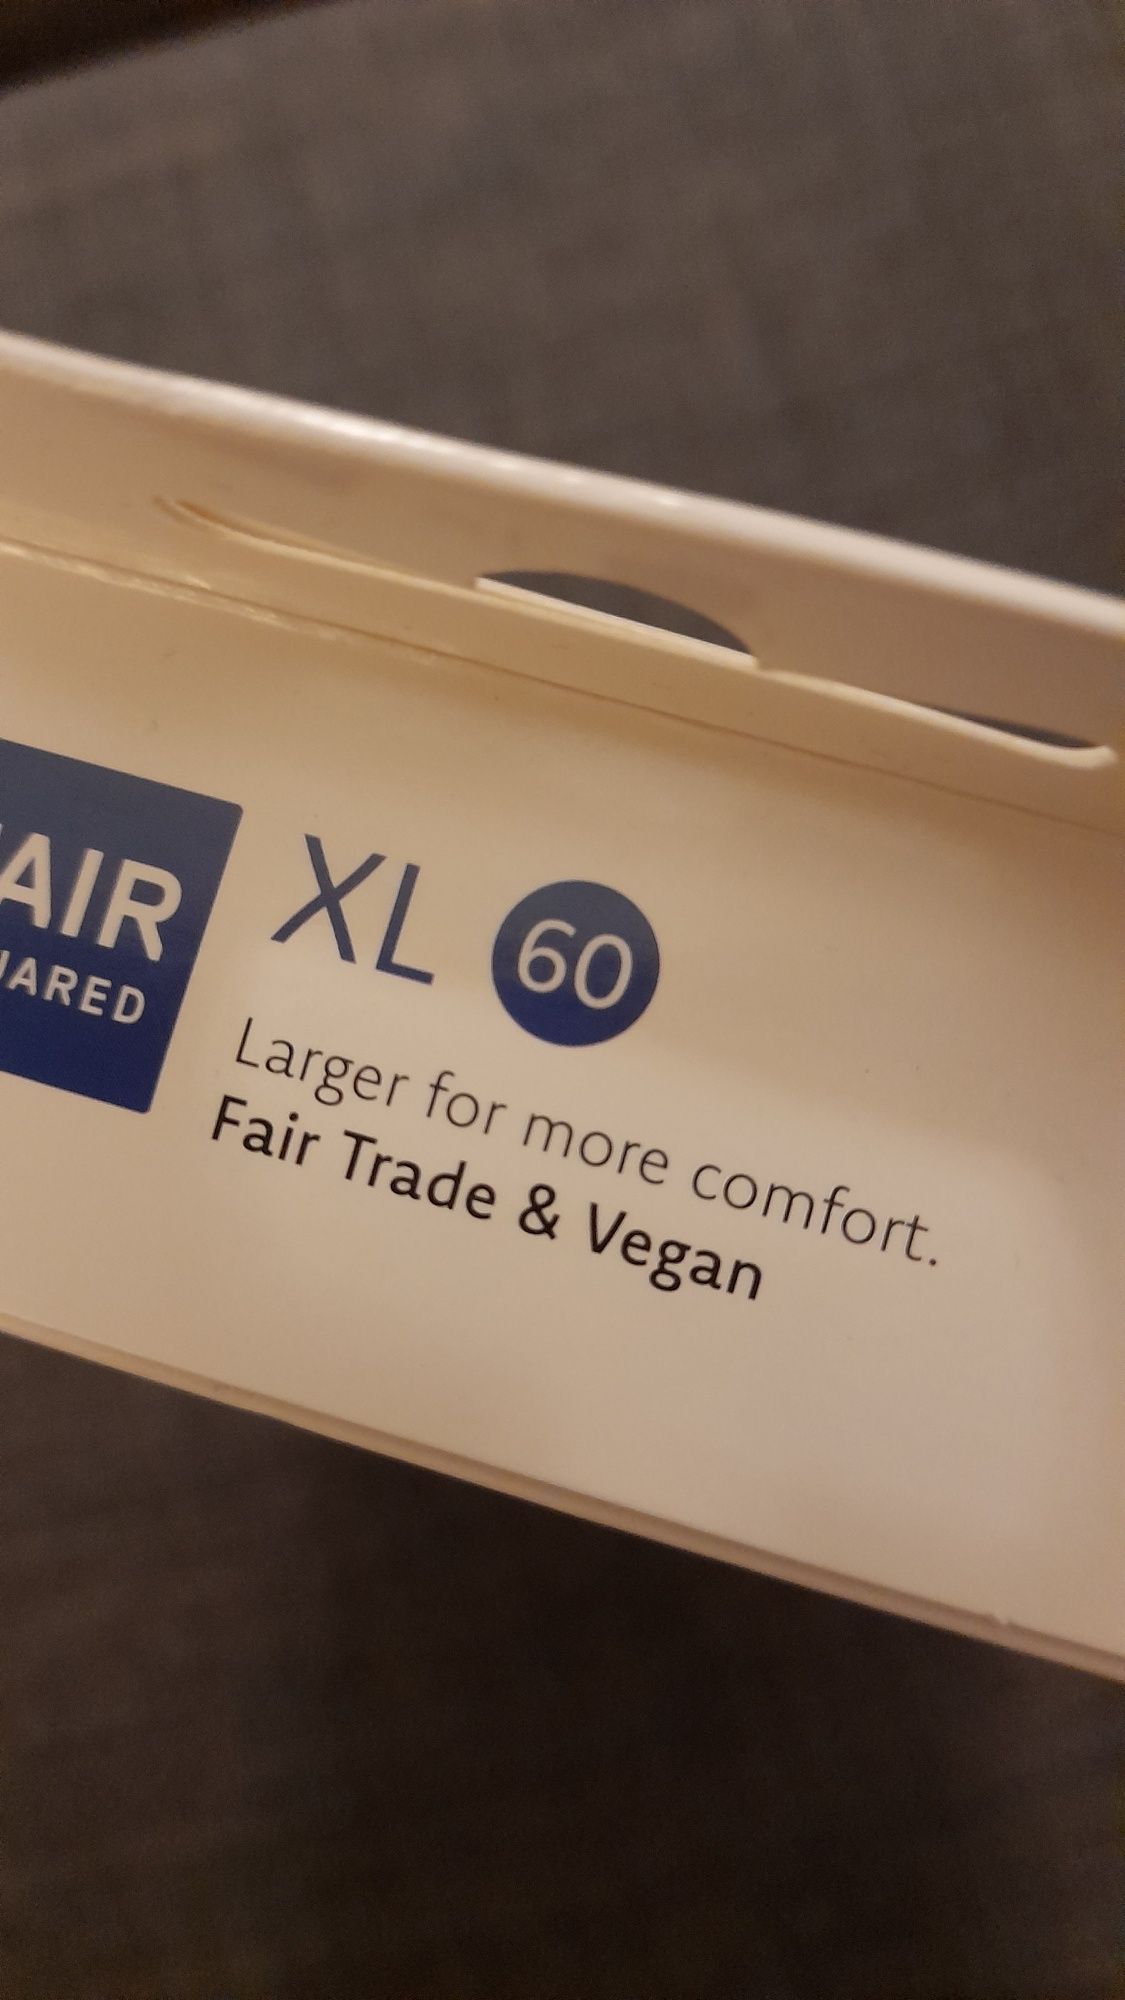 Preservativos Vegan Fair Squared